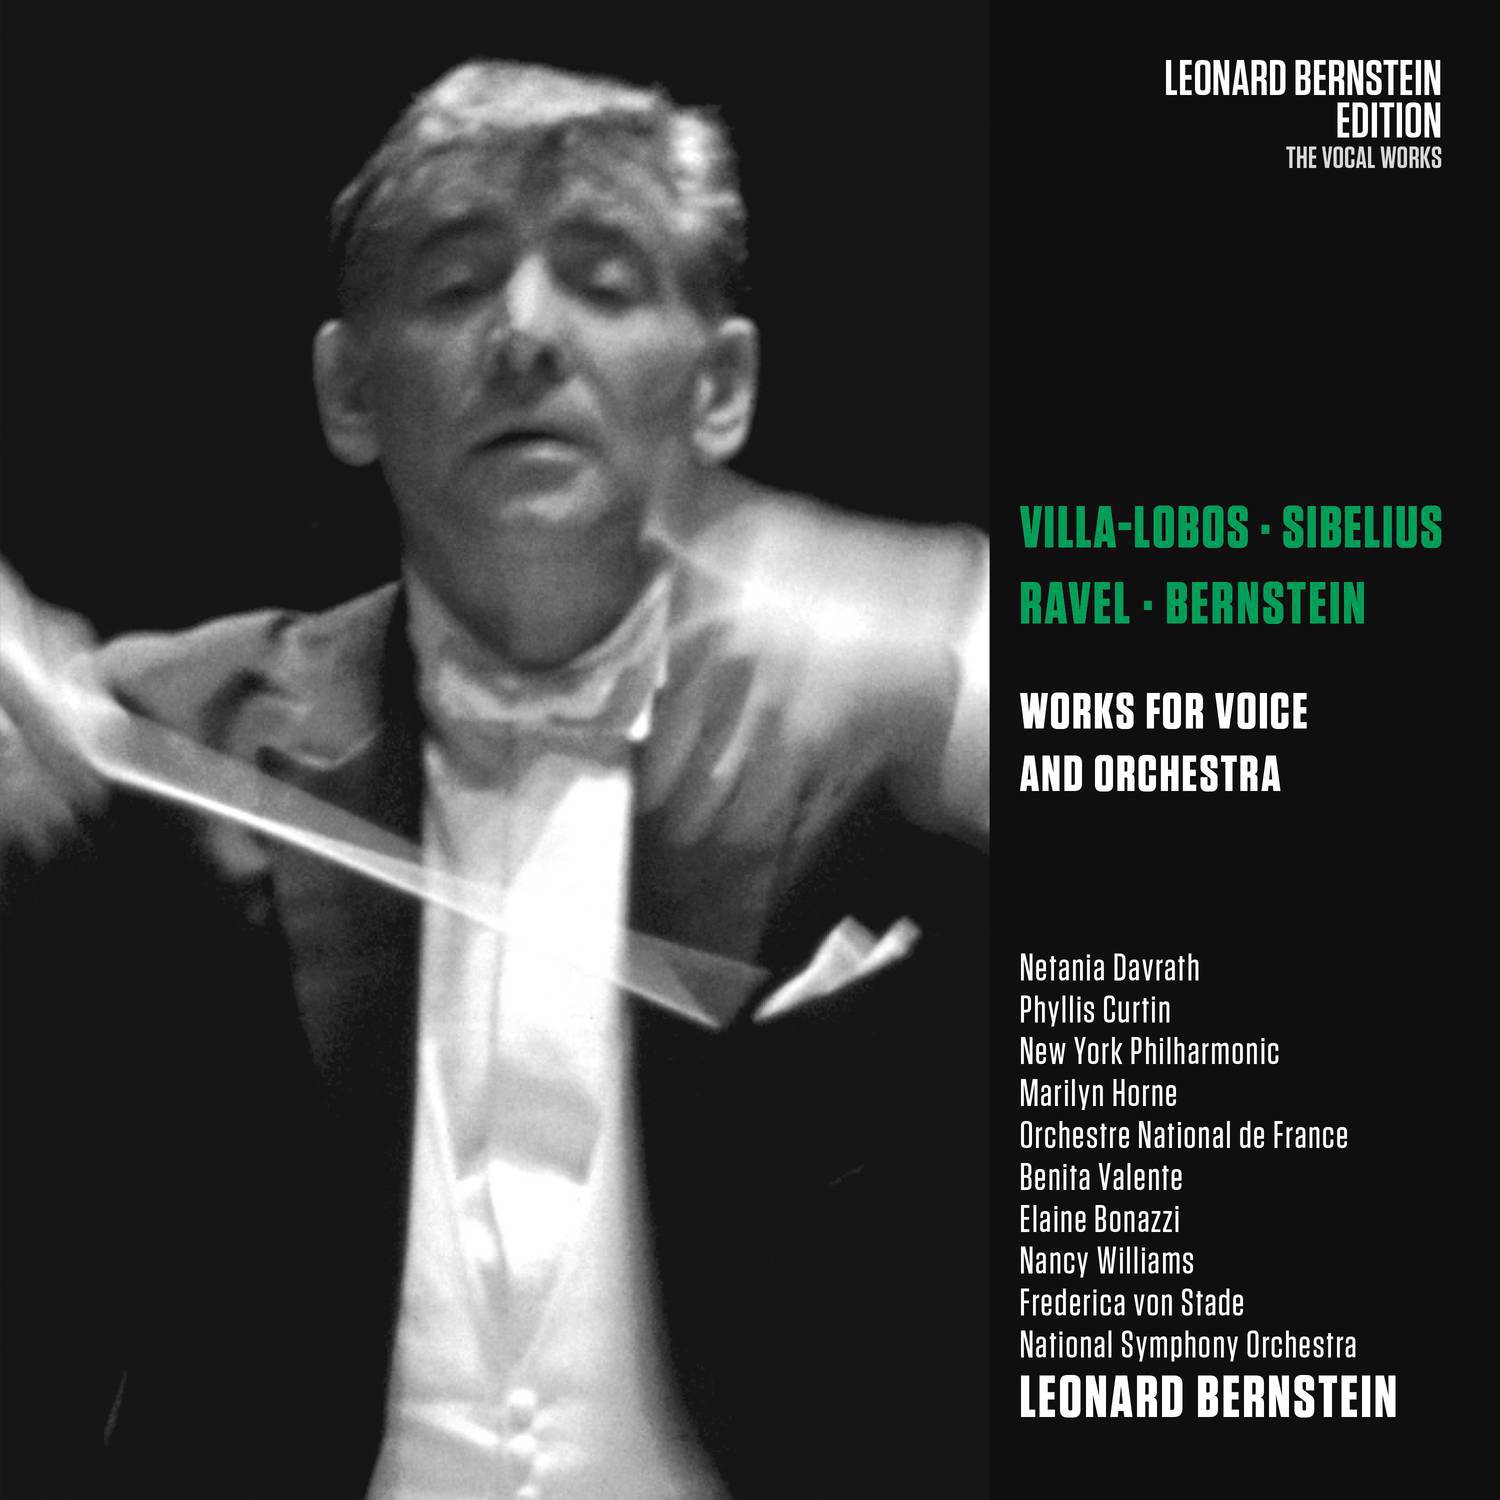 VillaLobos: Bachiana brasileira No. 5, W 389  Sibelius: Luonnotar, Op. 70  Ravel: She he razade